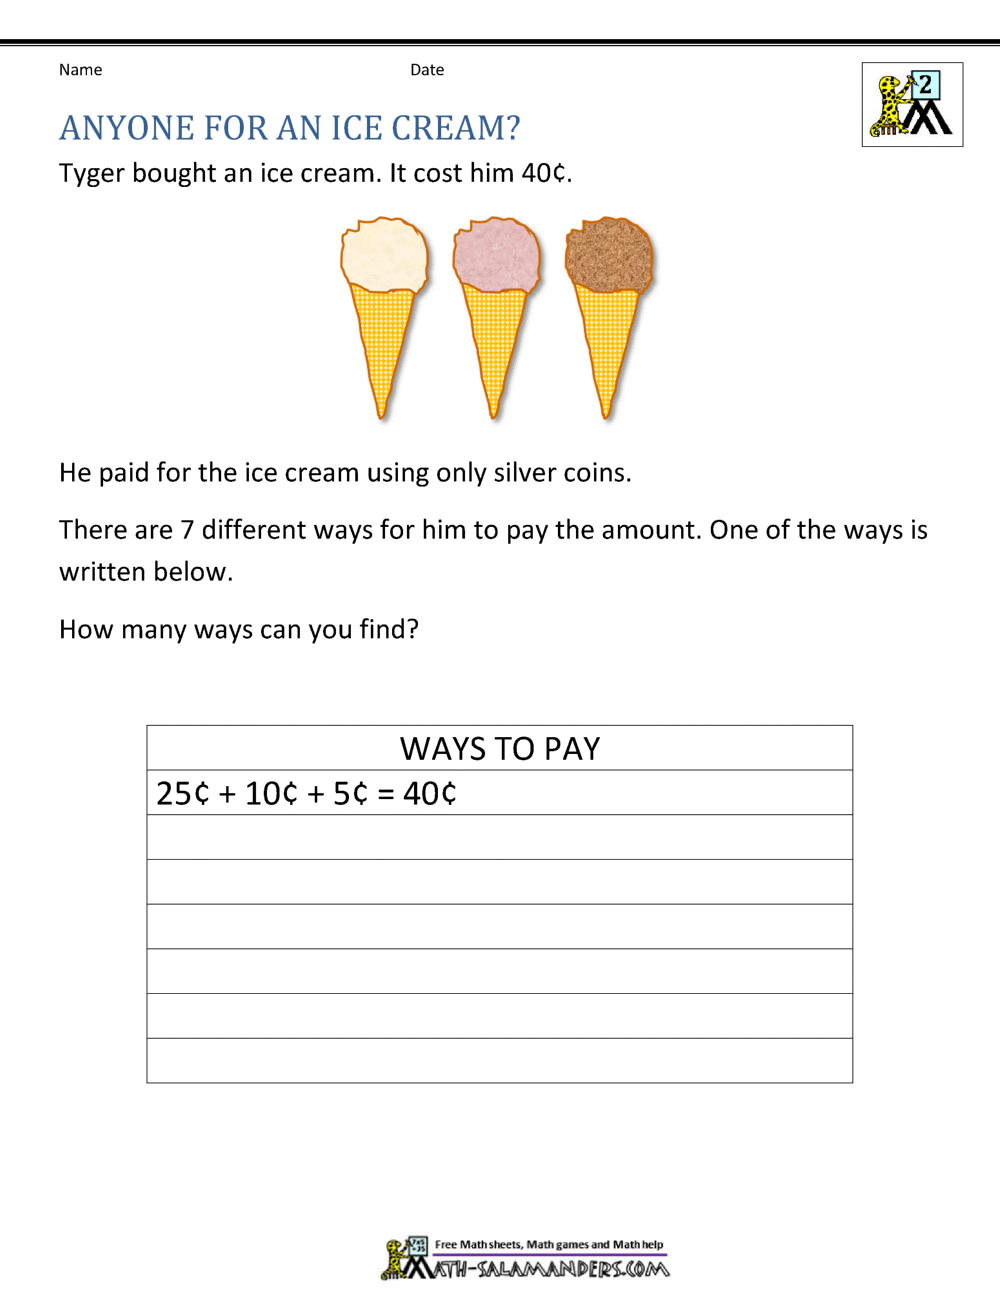 Second Grade Math Problems